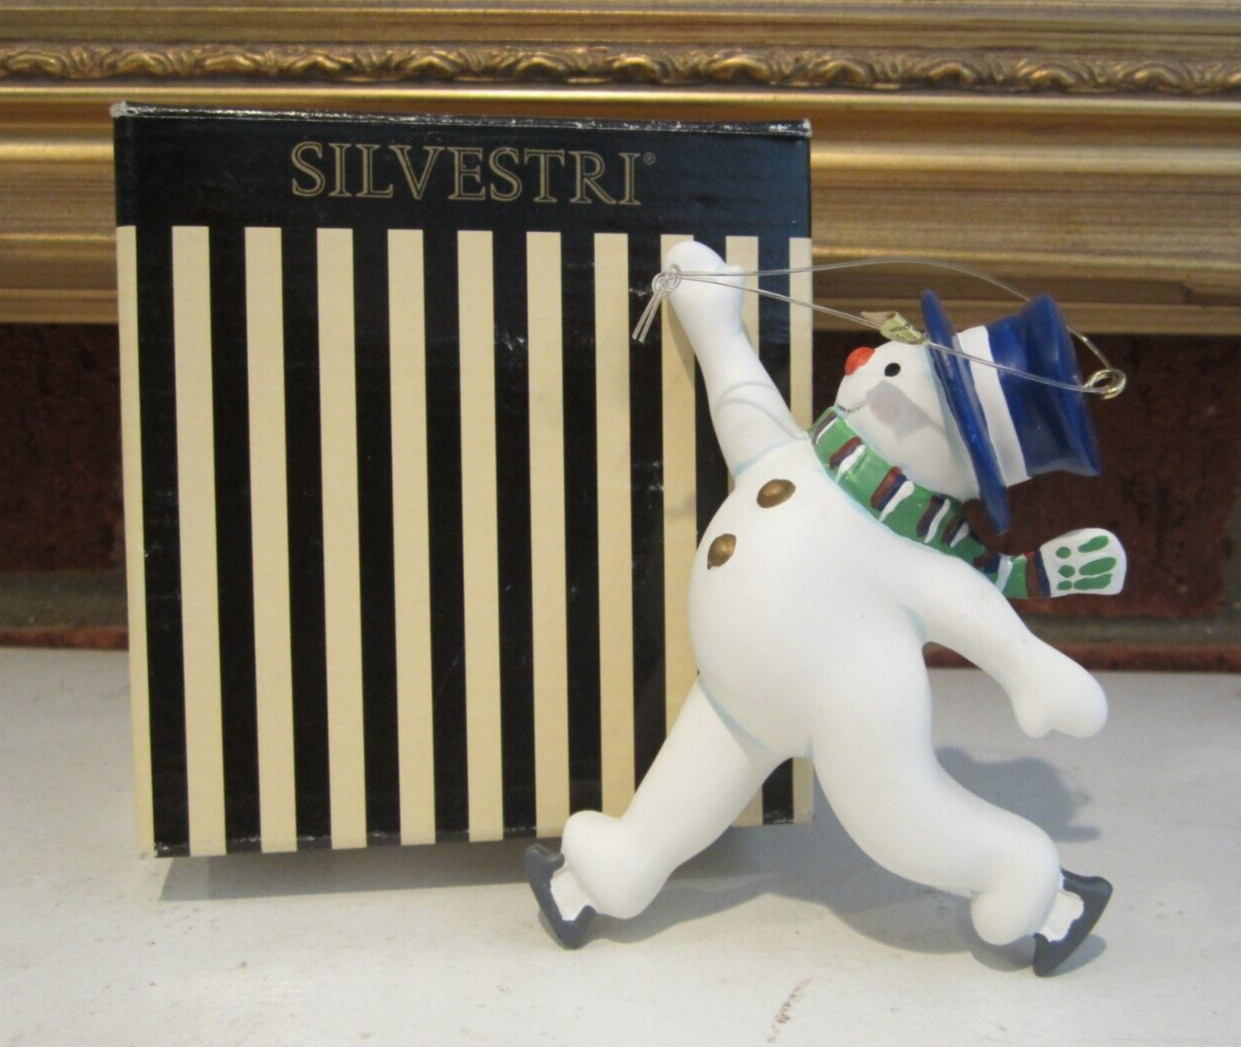 SILVESTRI Skating SNOWMAN Ornament #7063 In Original Box Jaunty Snowman